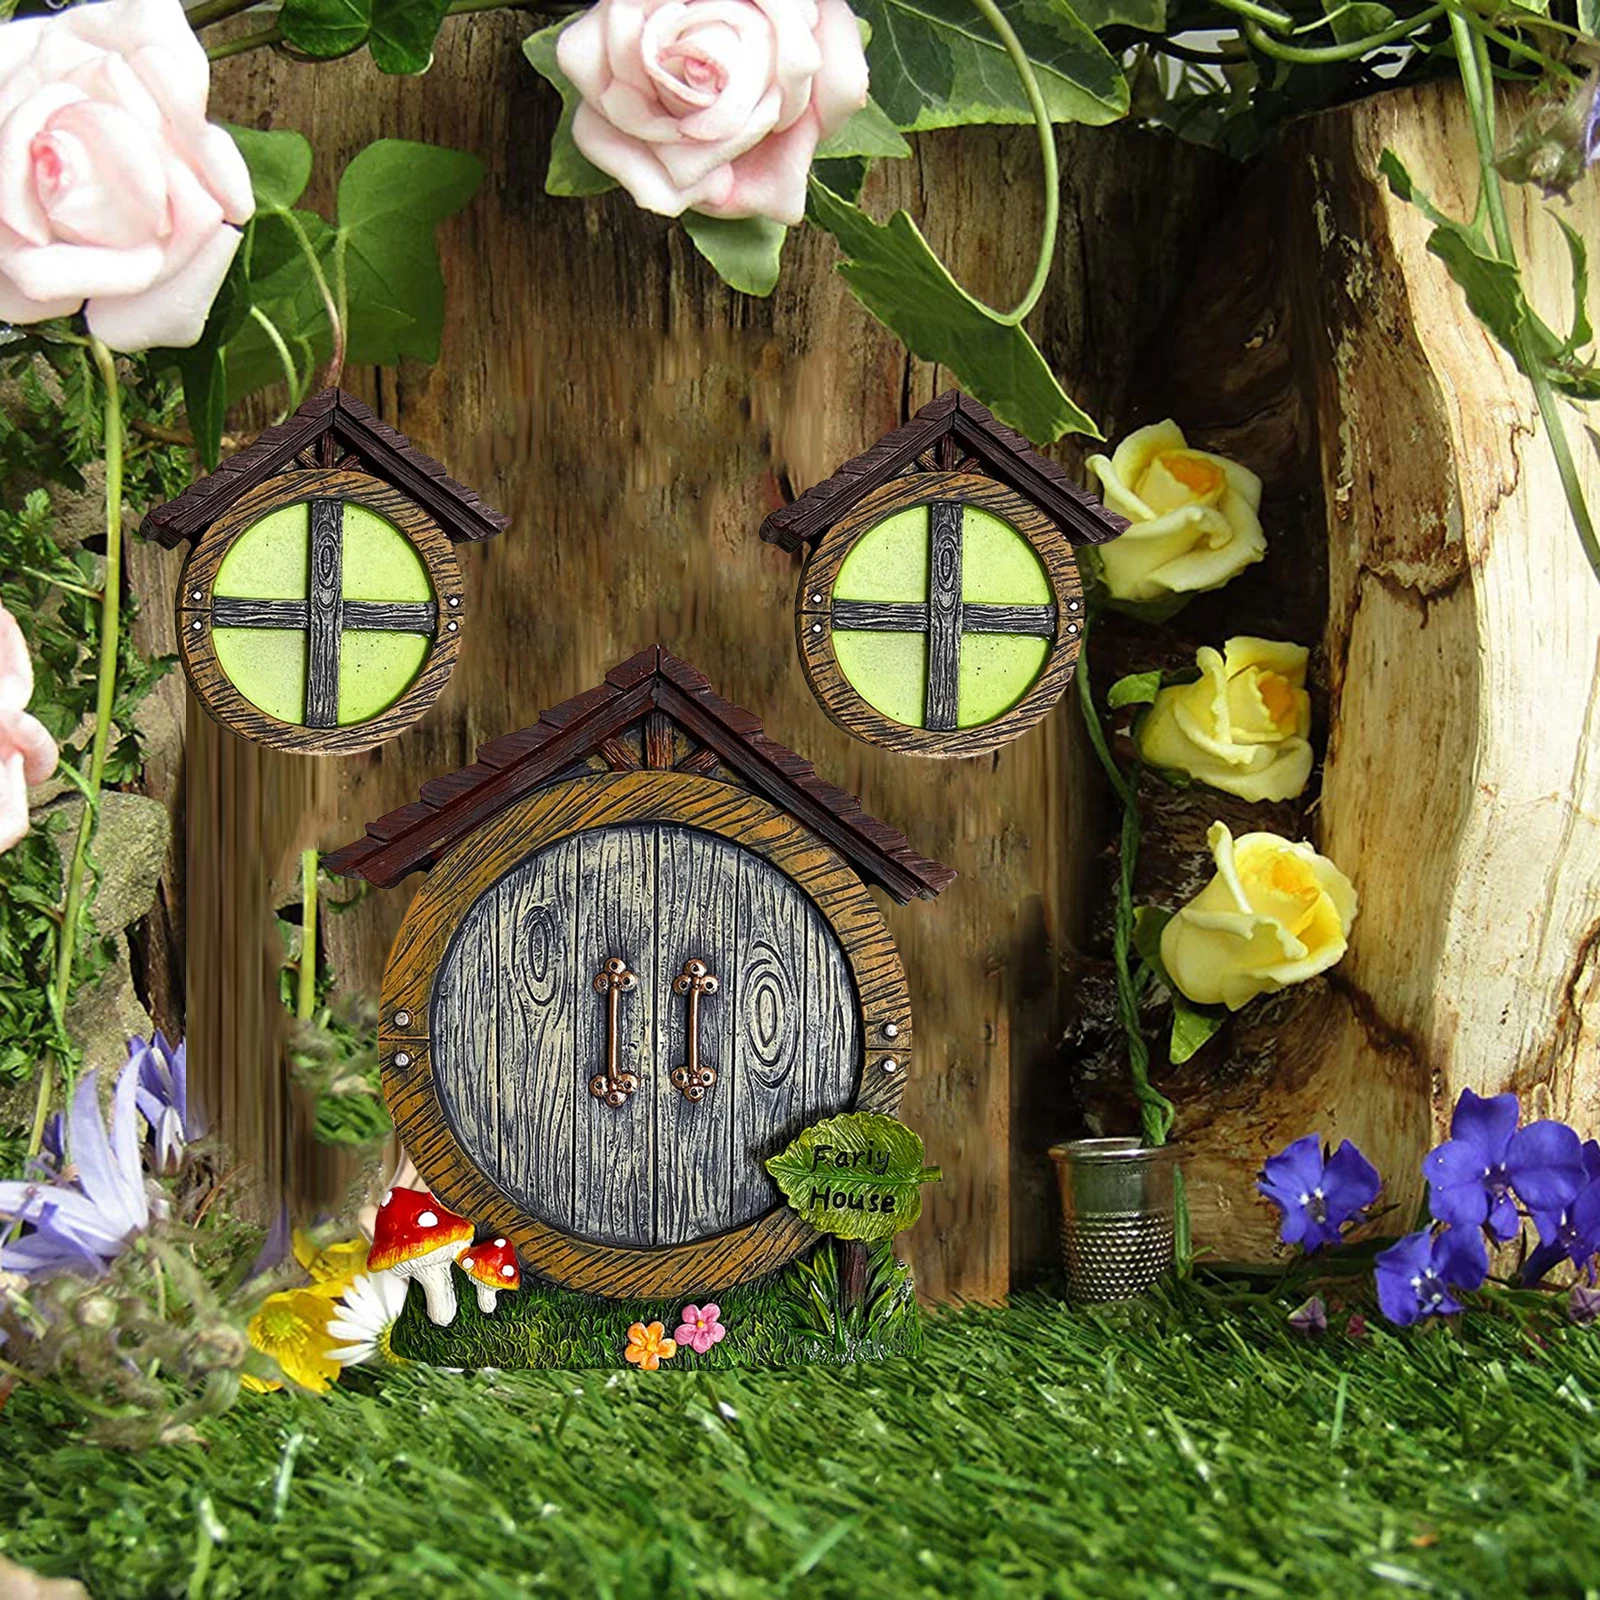 Fairy Gnome Home Miniature Window and Door for Trees Decoration, Glow in Dark Fairies Sleeping Door & Windows